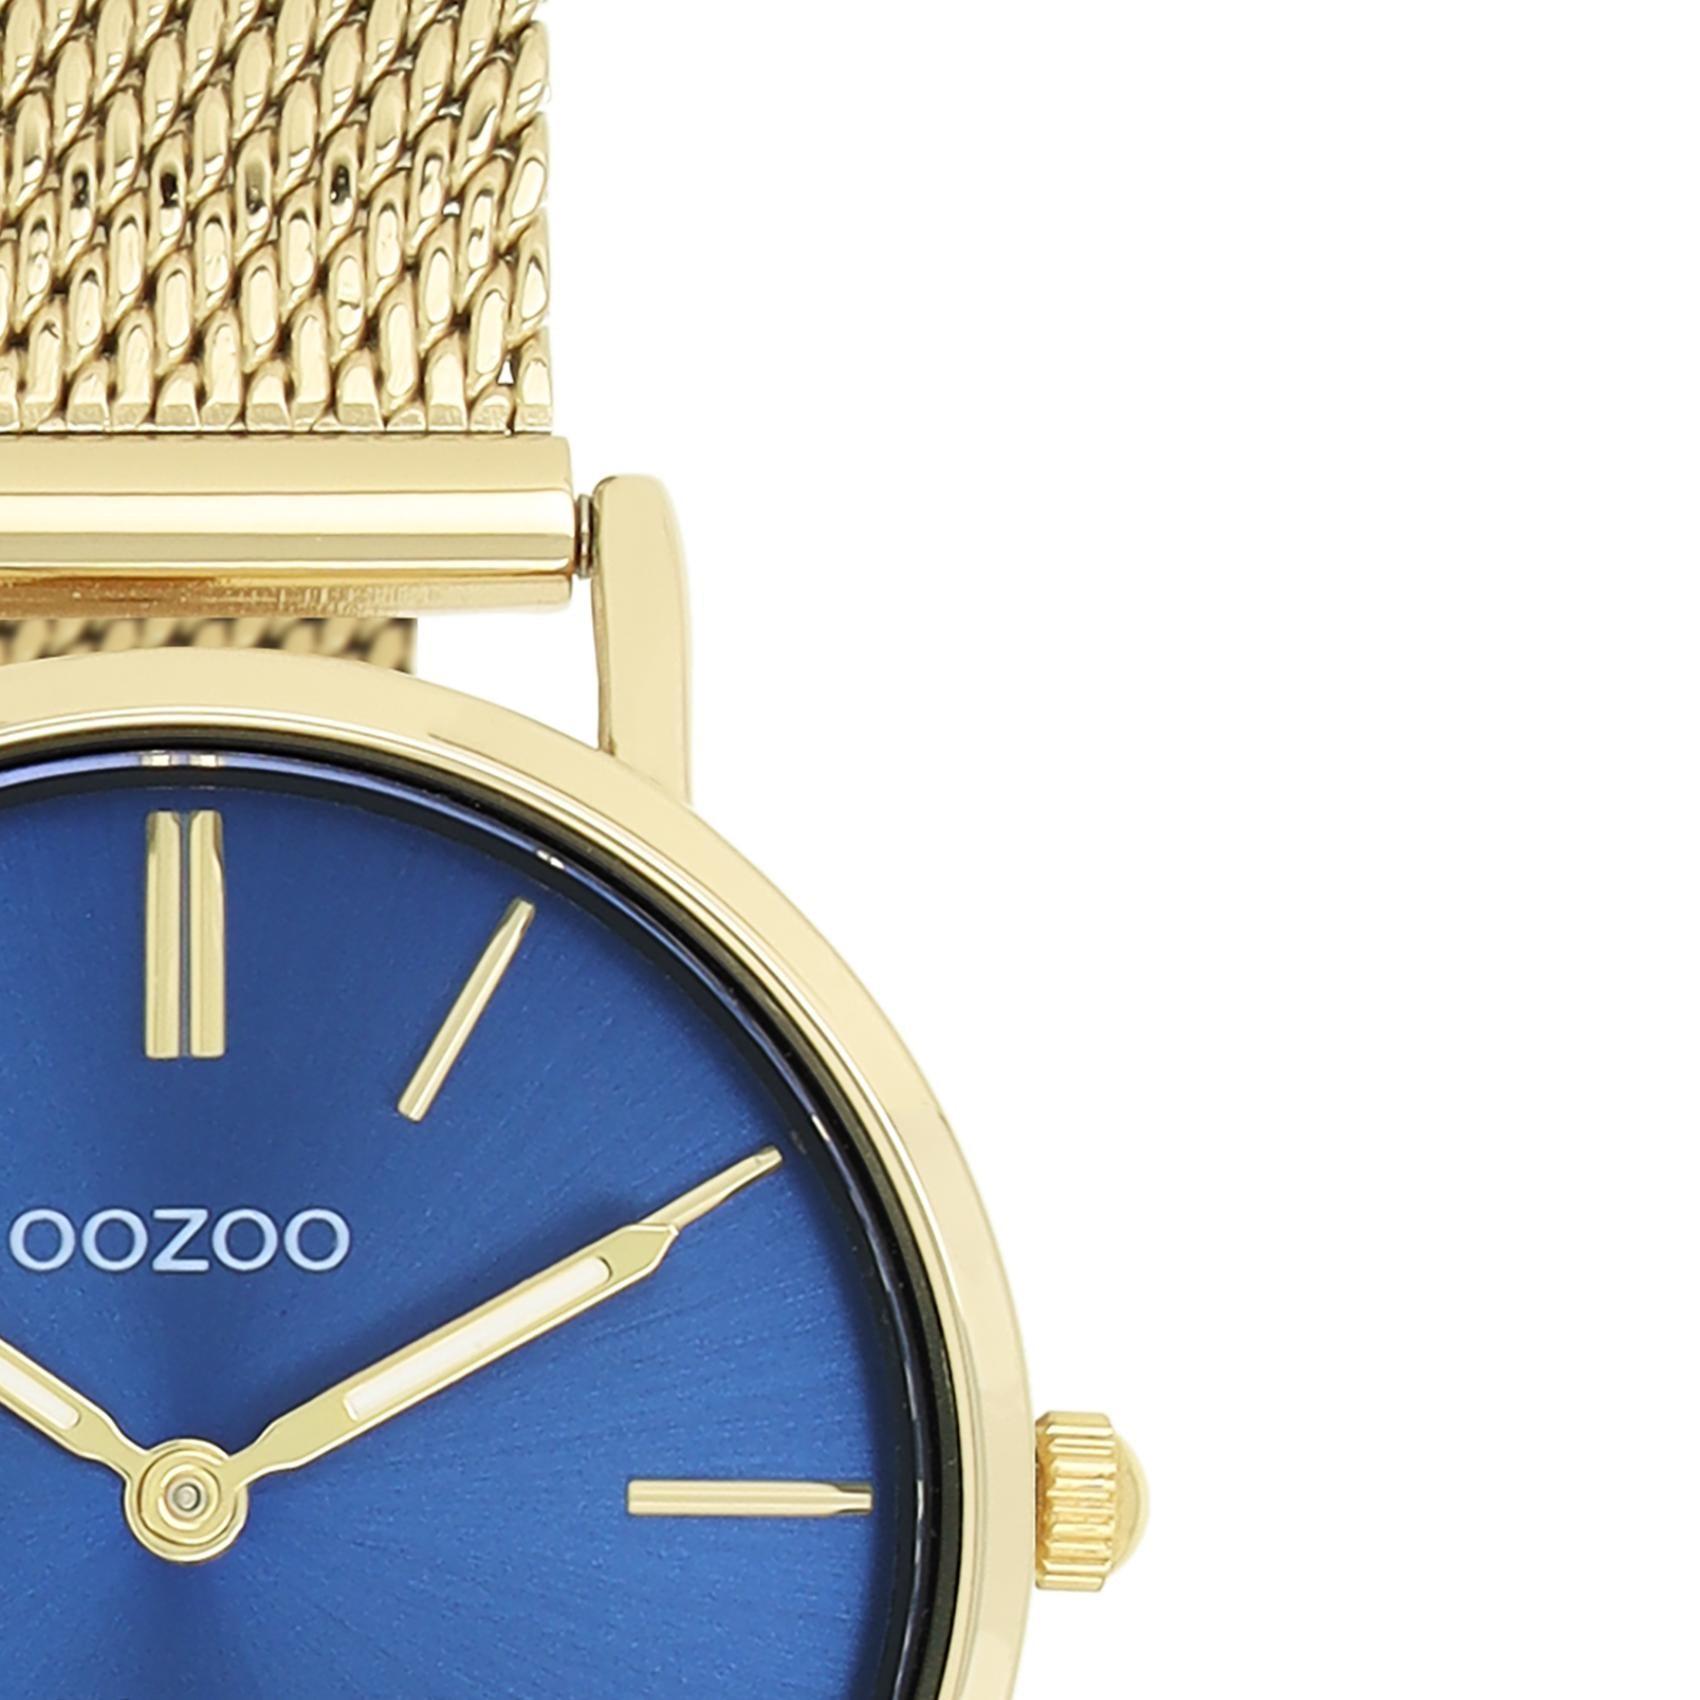 Ρολόι Oozoo Vintage C20293 με χρυσό ατσάλινο μπρασελέ,μπλε καντράν διαμέτρου 28mm και μηχανισμό μπαταρίας quartz.